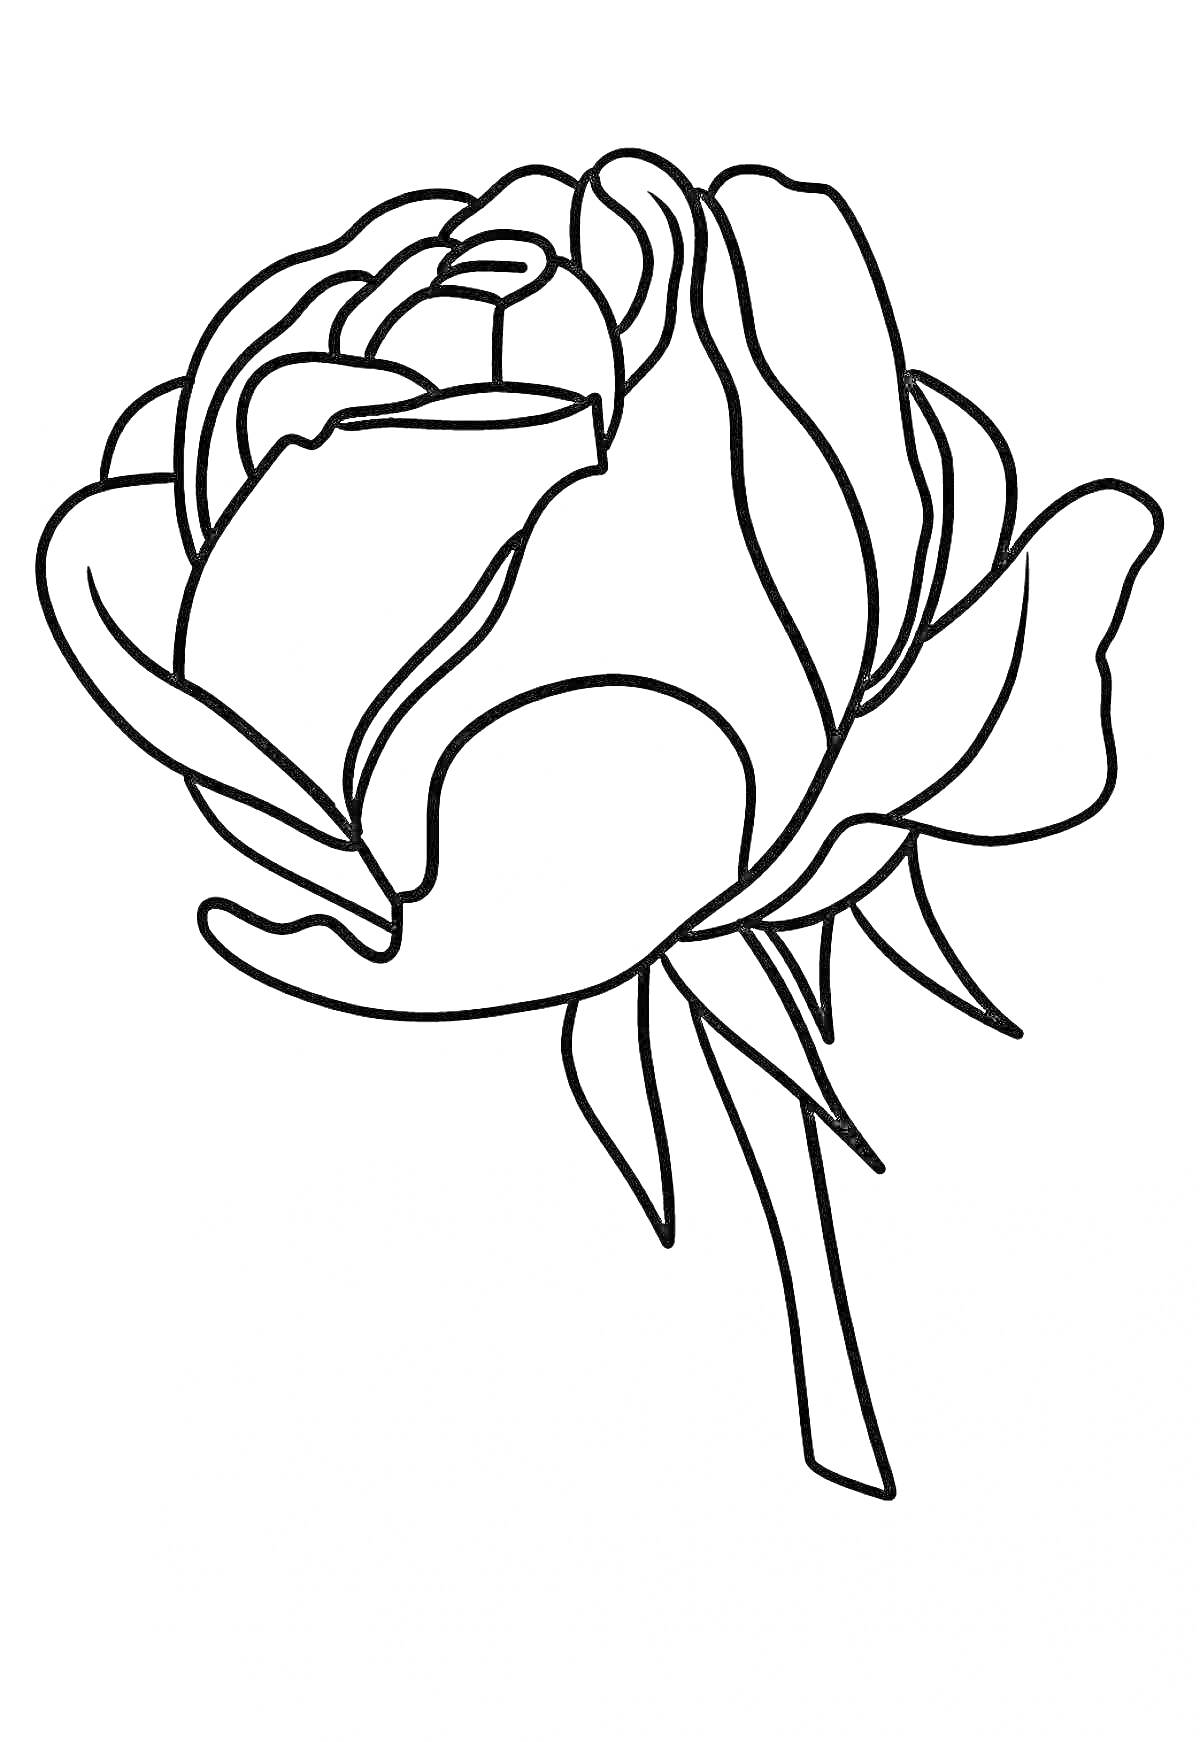 Раскраска Раскраска роза - бутон розы с лепестками и стеблем для детей